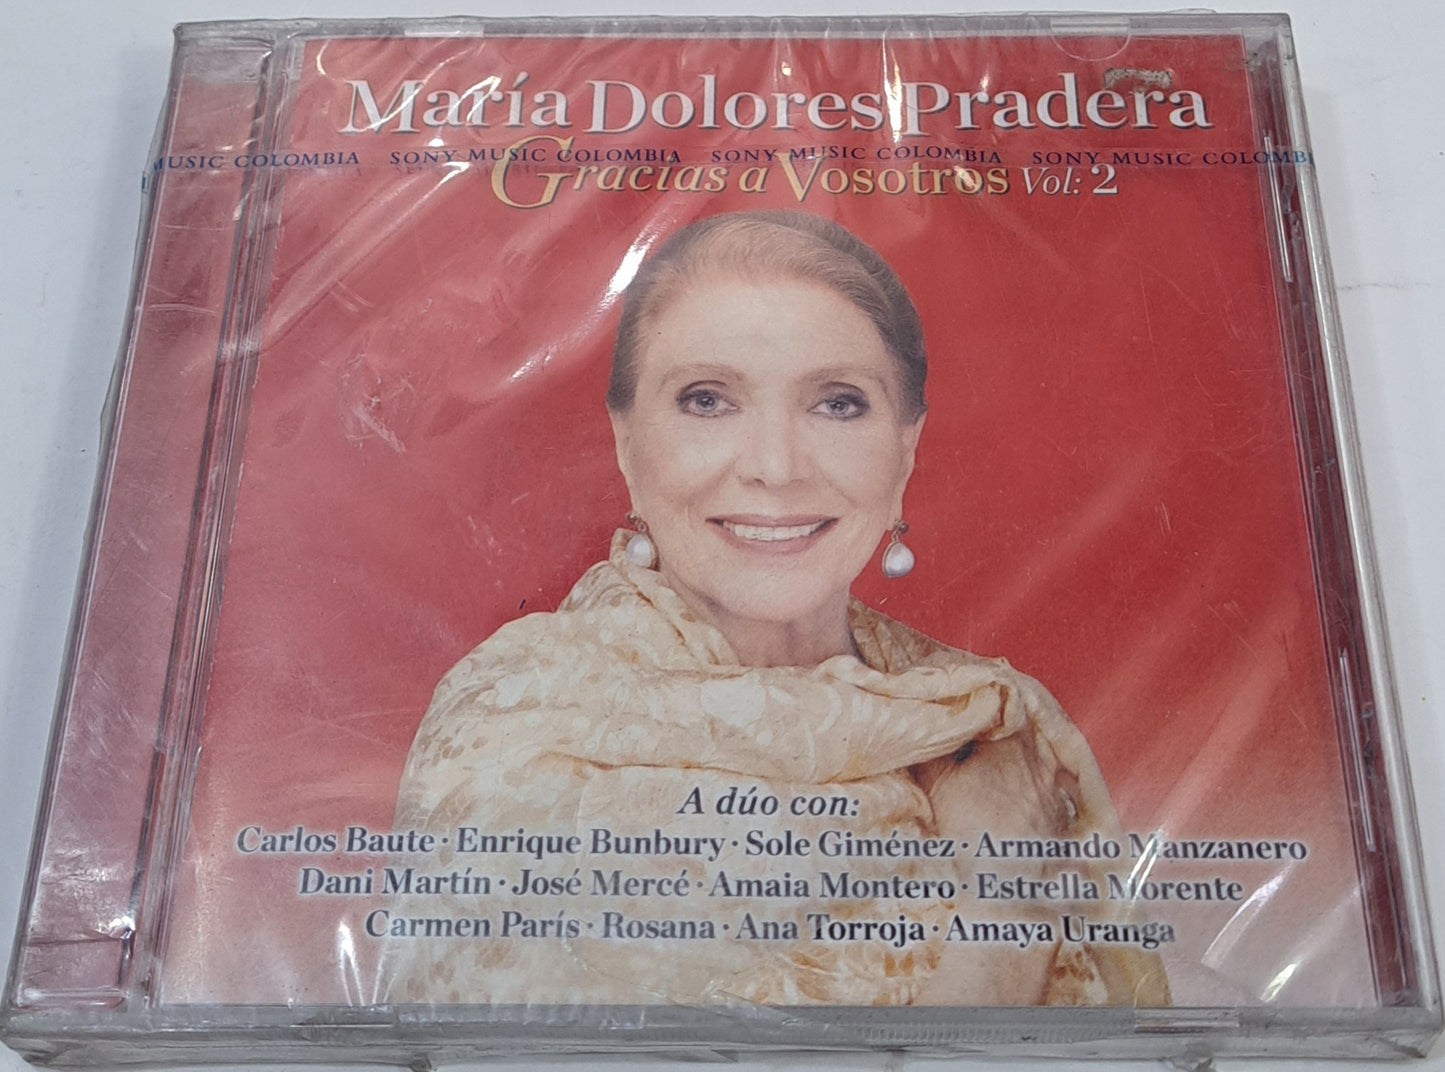 MARIA DOLORES PRADERA - GRACIAS A VOSOTROS VOL 2 CD